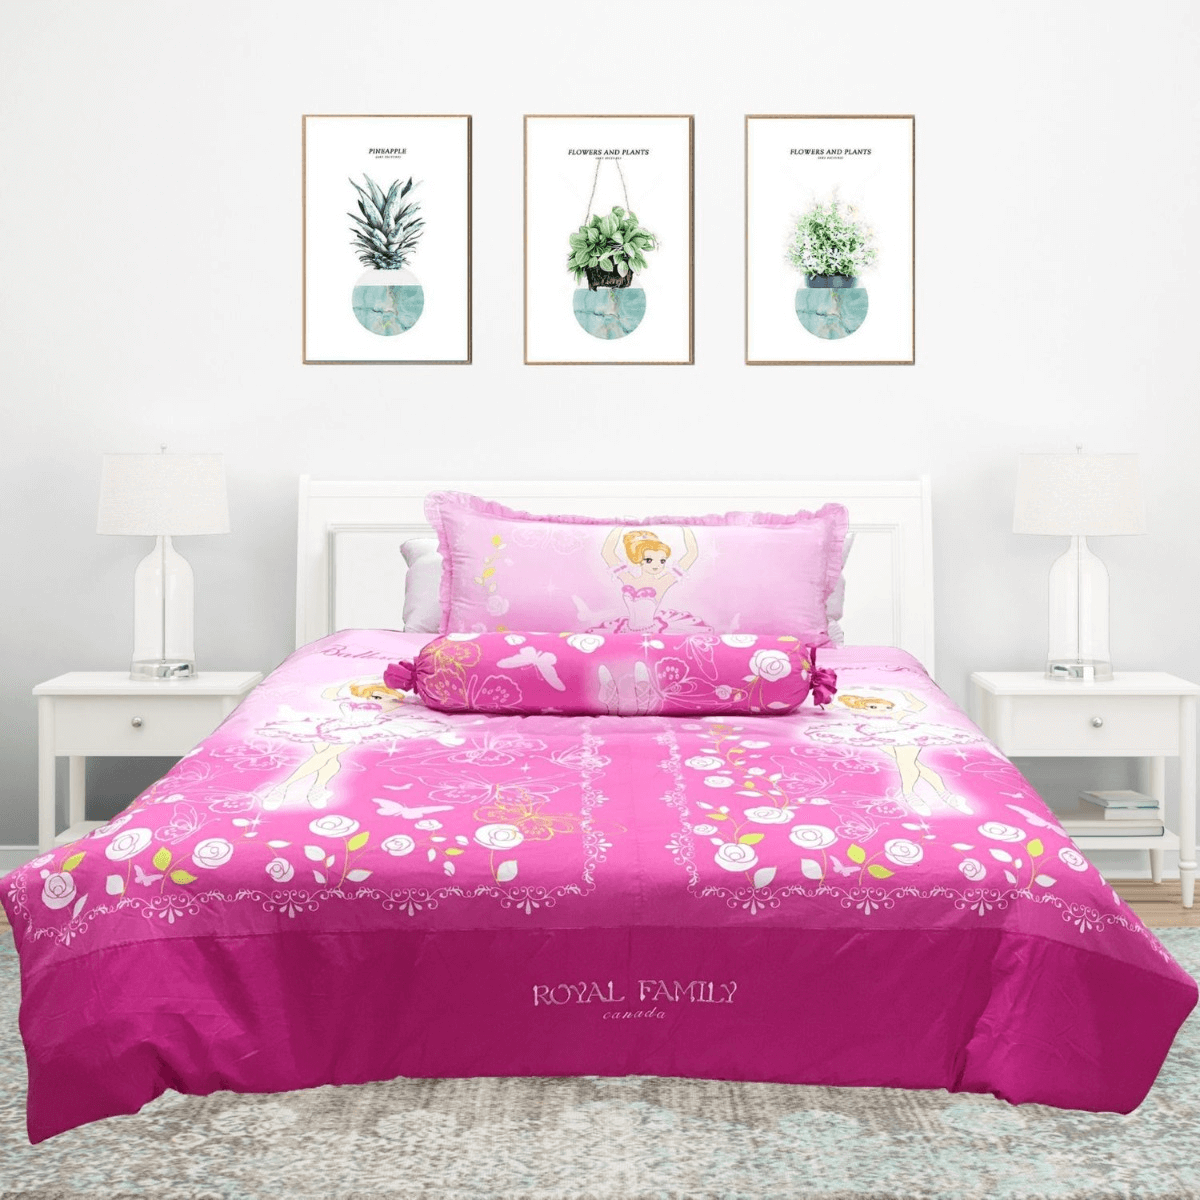 Ga giường màu hồng Canada họa tiết hoạt hình và công chúa dễ thương